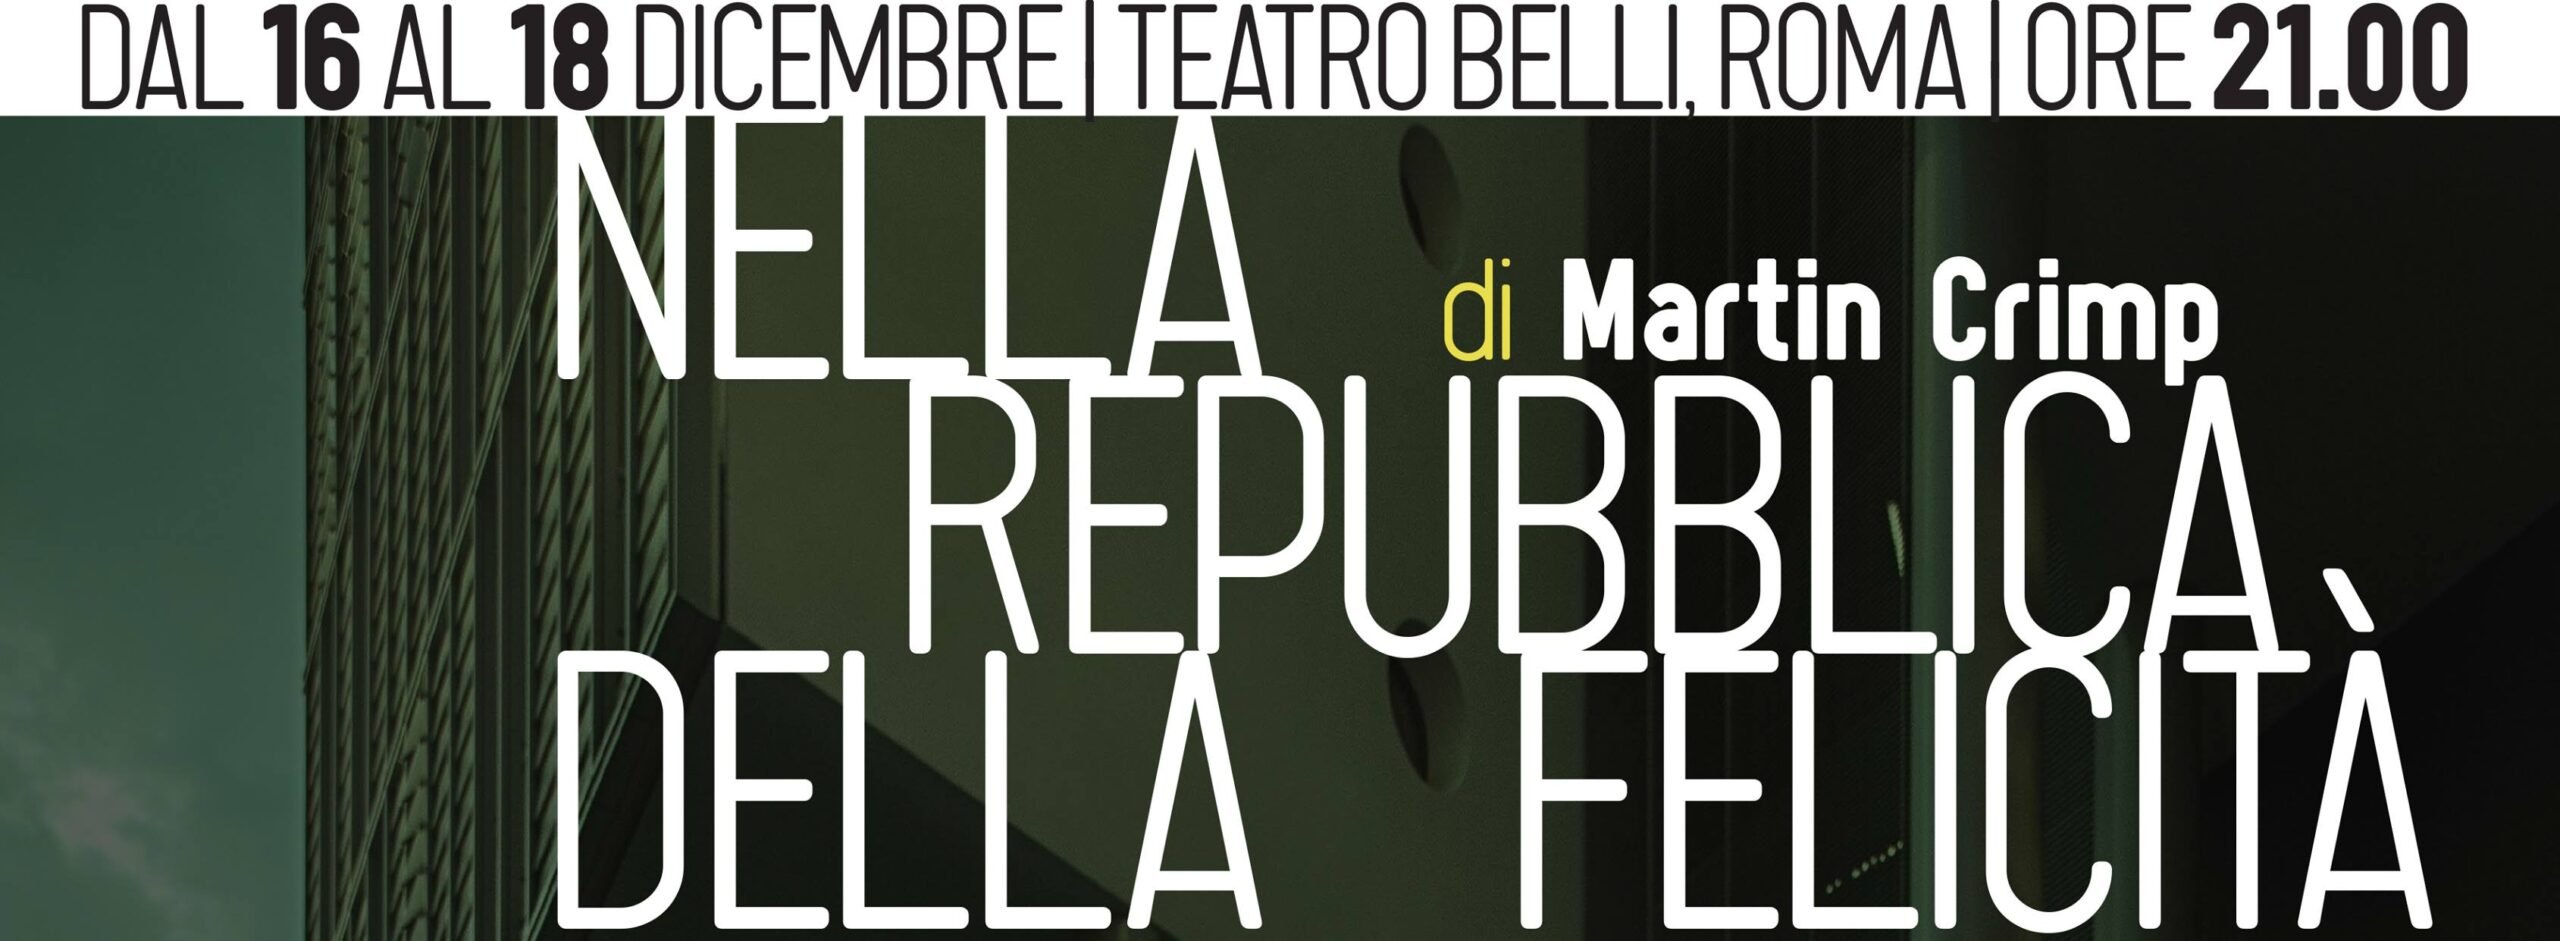 Teatro Belli – Nella Repubblica della Felicità di Martin Crimp